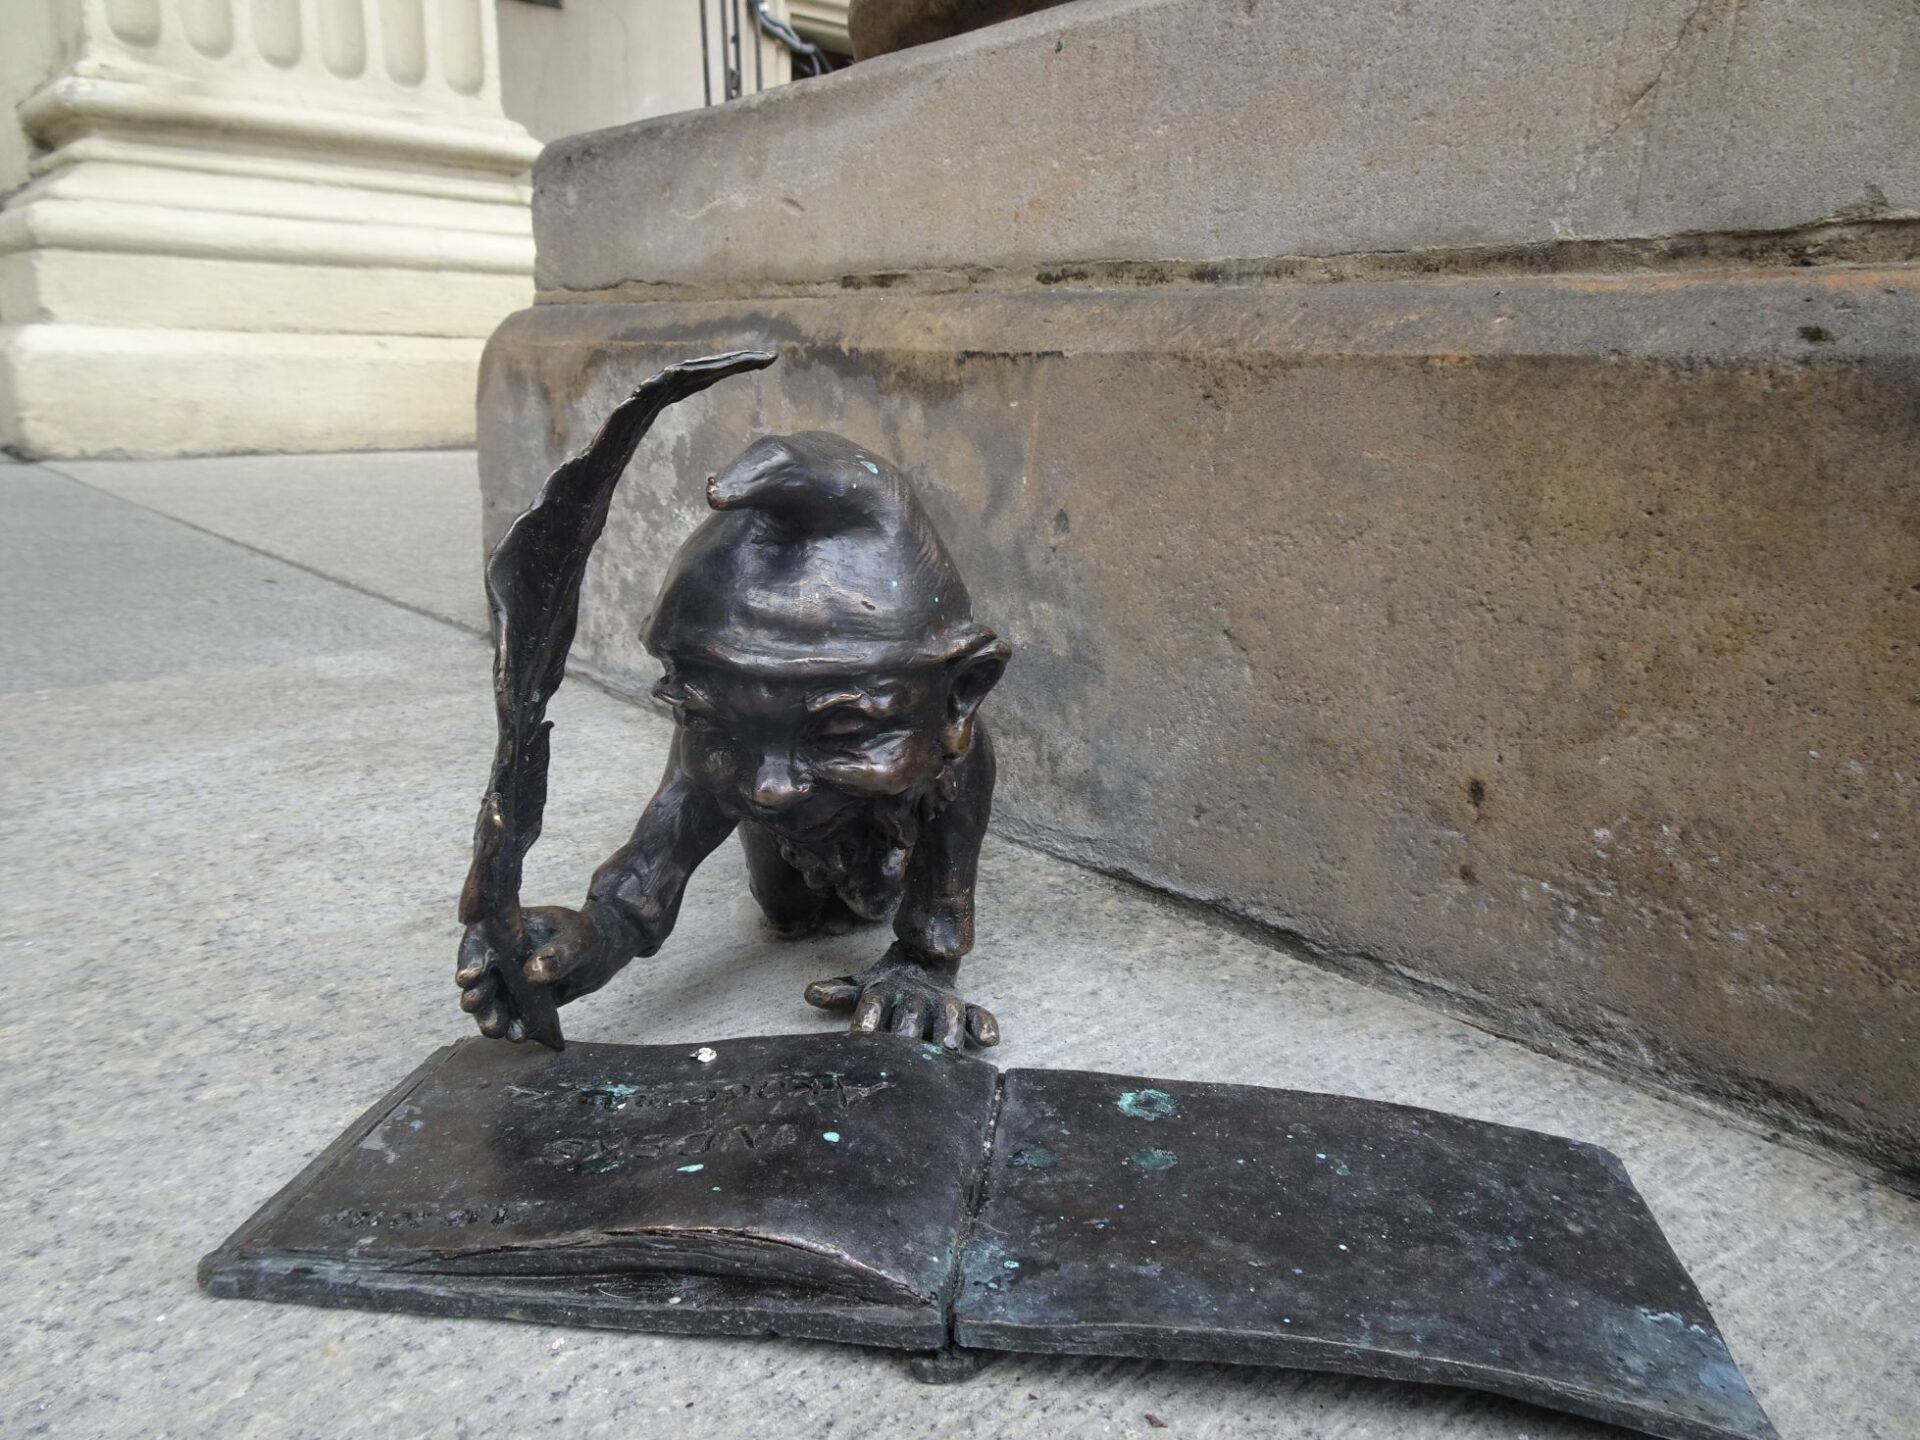 Rzeźba wykonana z brązu. Rzeźba przedstawia wrocławskiego skrzarta który pisze gęsim piórem po książce. Rzeźba jest na chodniku.